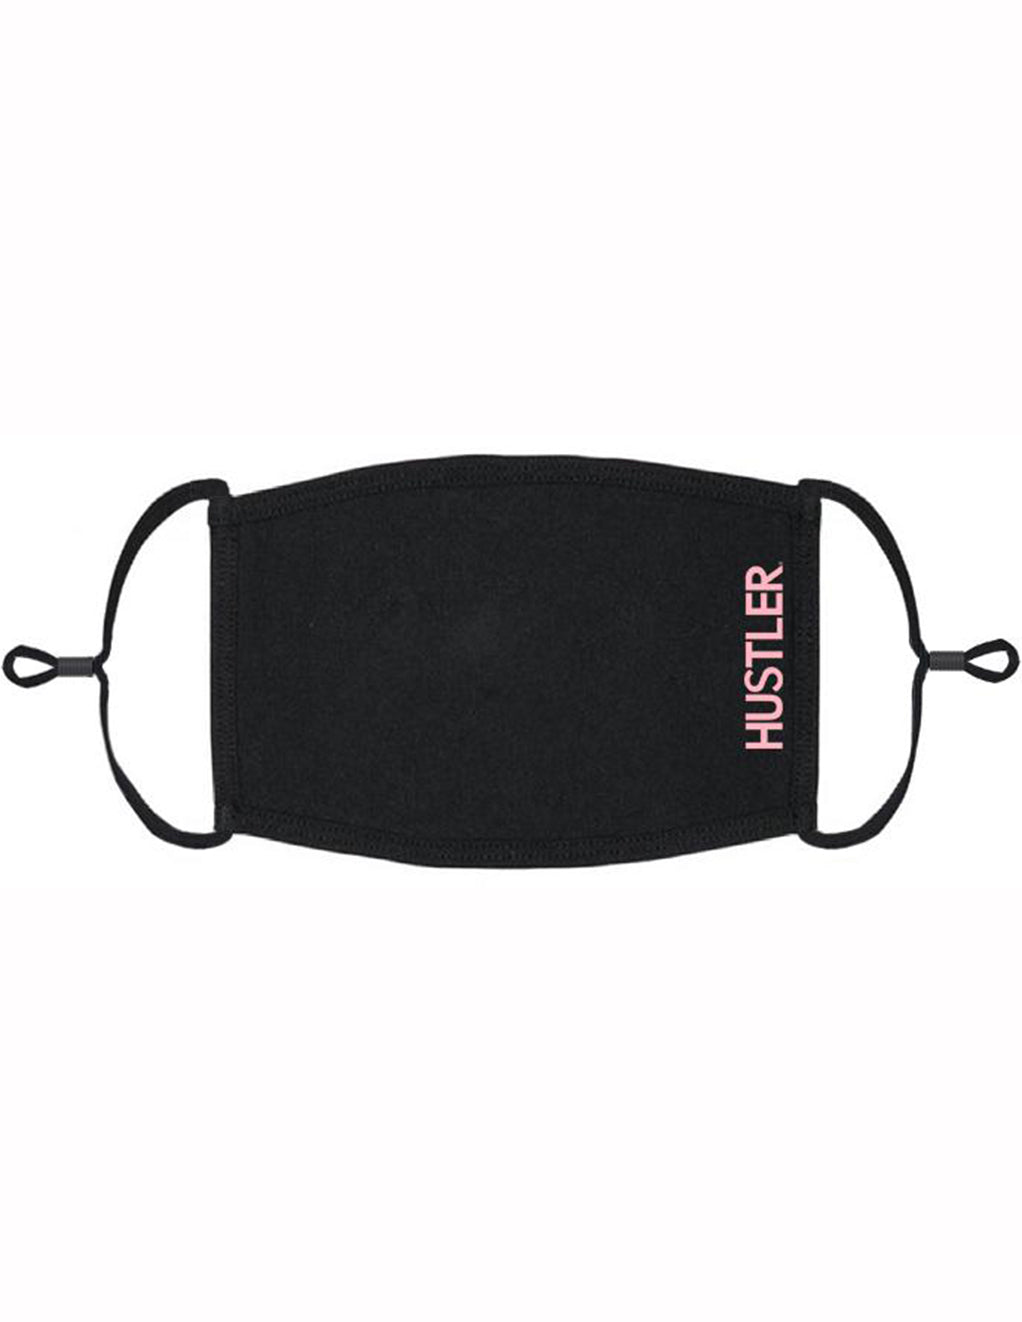 HUSTLER® Face Mask with Side Logo- Pink- Front